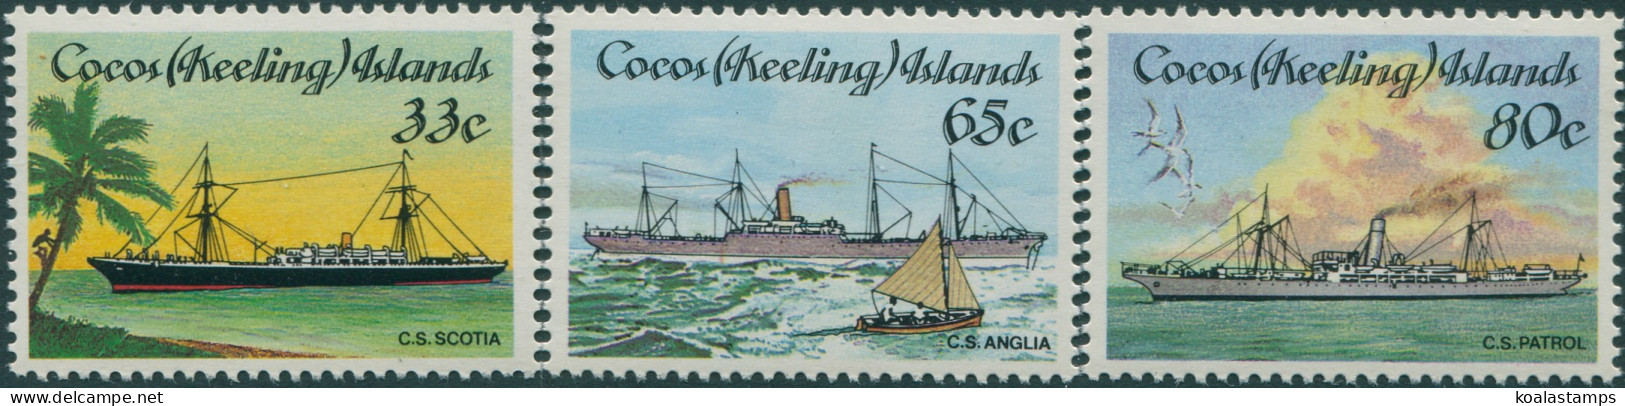 Cocos Islands 1985 SG129-131 Malay Culture Set MNH - Islas Cocos (Keeling)